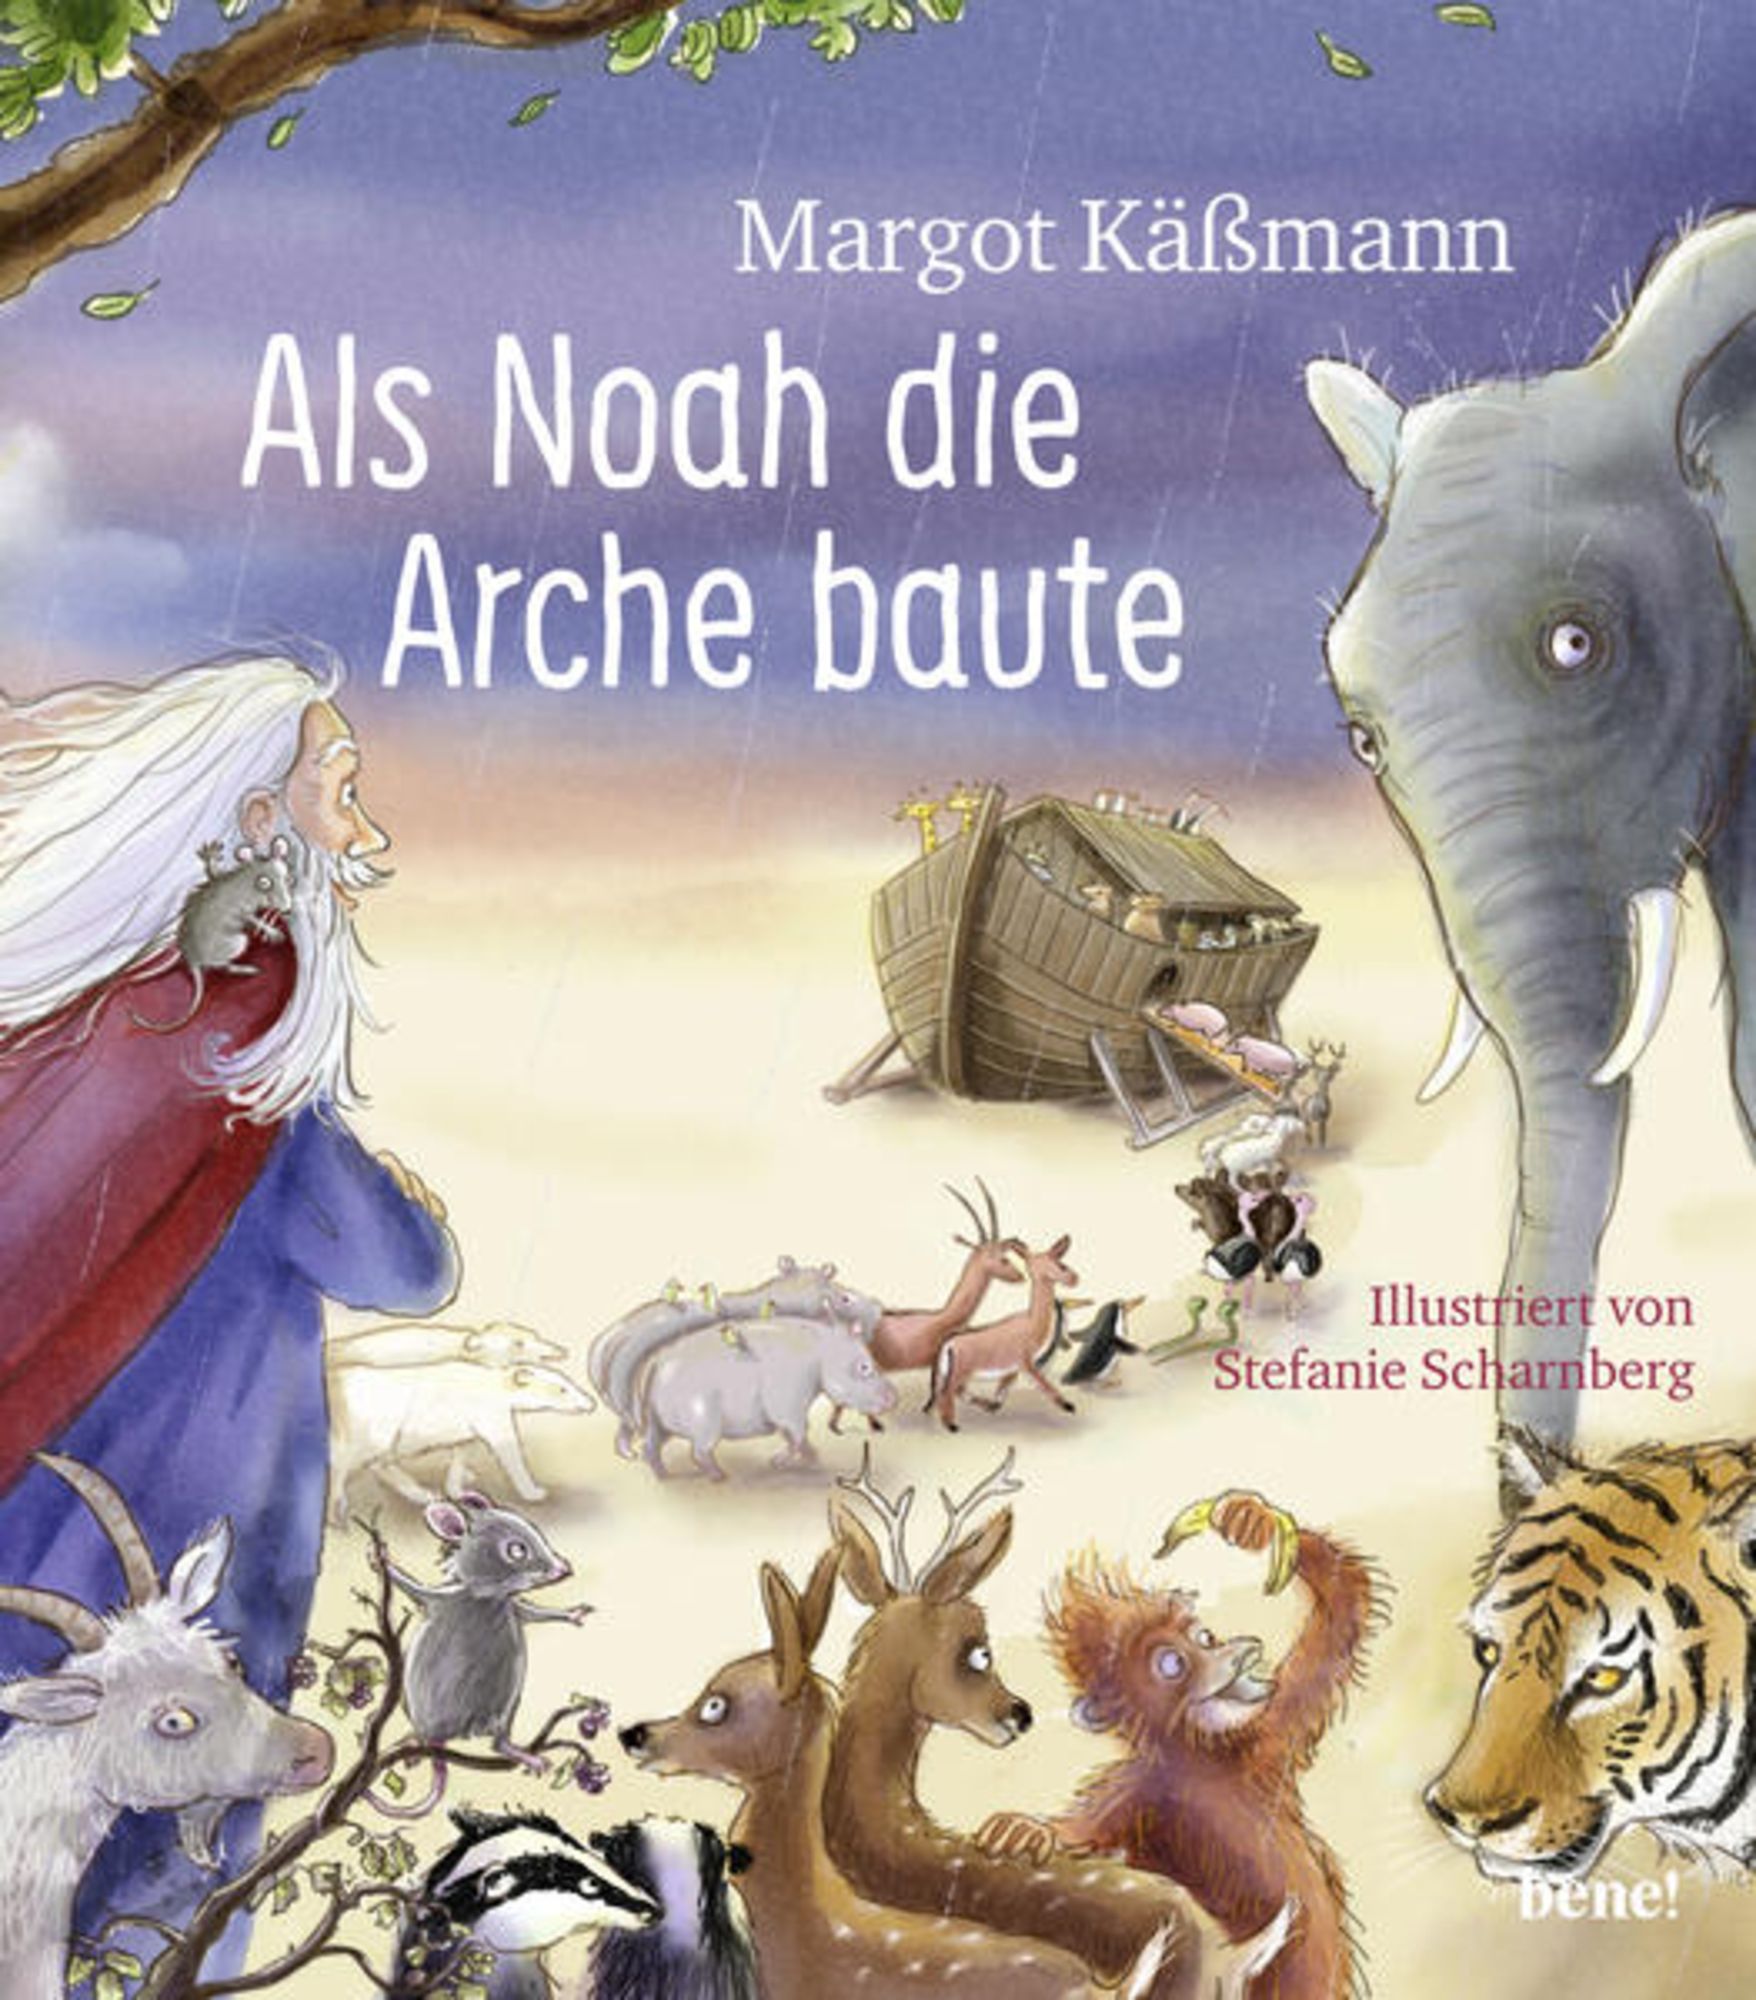 Als Noah die Arche baute – ein Bilderbuch für Kinder ab 5 Jahren\' von  \'Margot Kässmann\' - Buch - \'978-3-96340-126-8\'